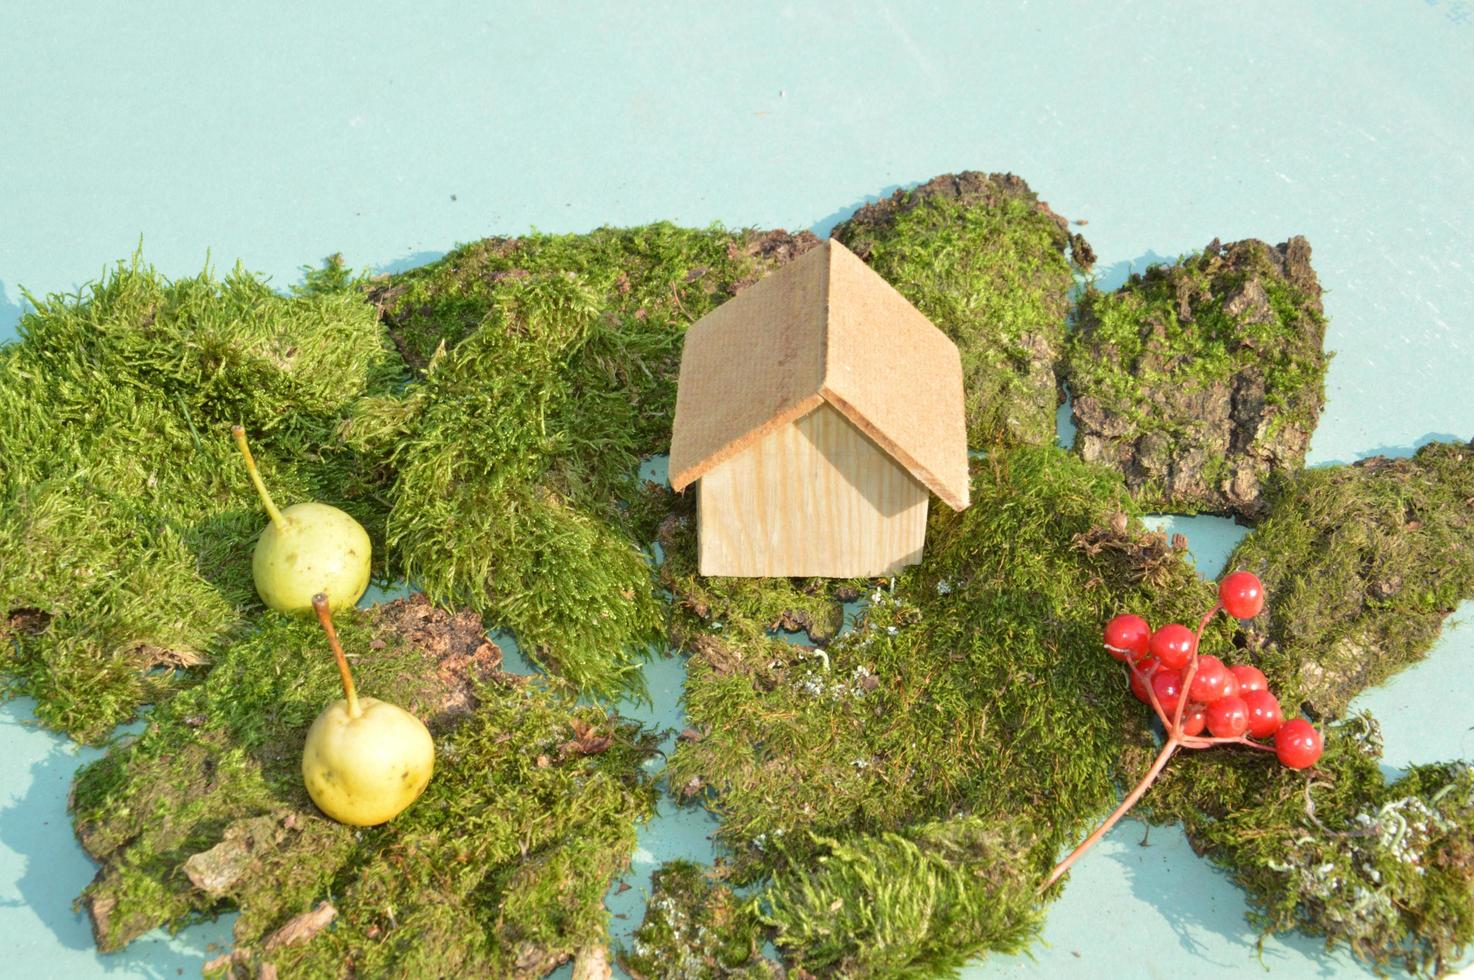 trä modell av ett hus och familj foto